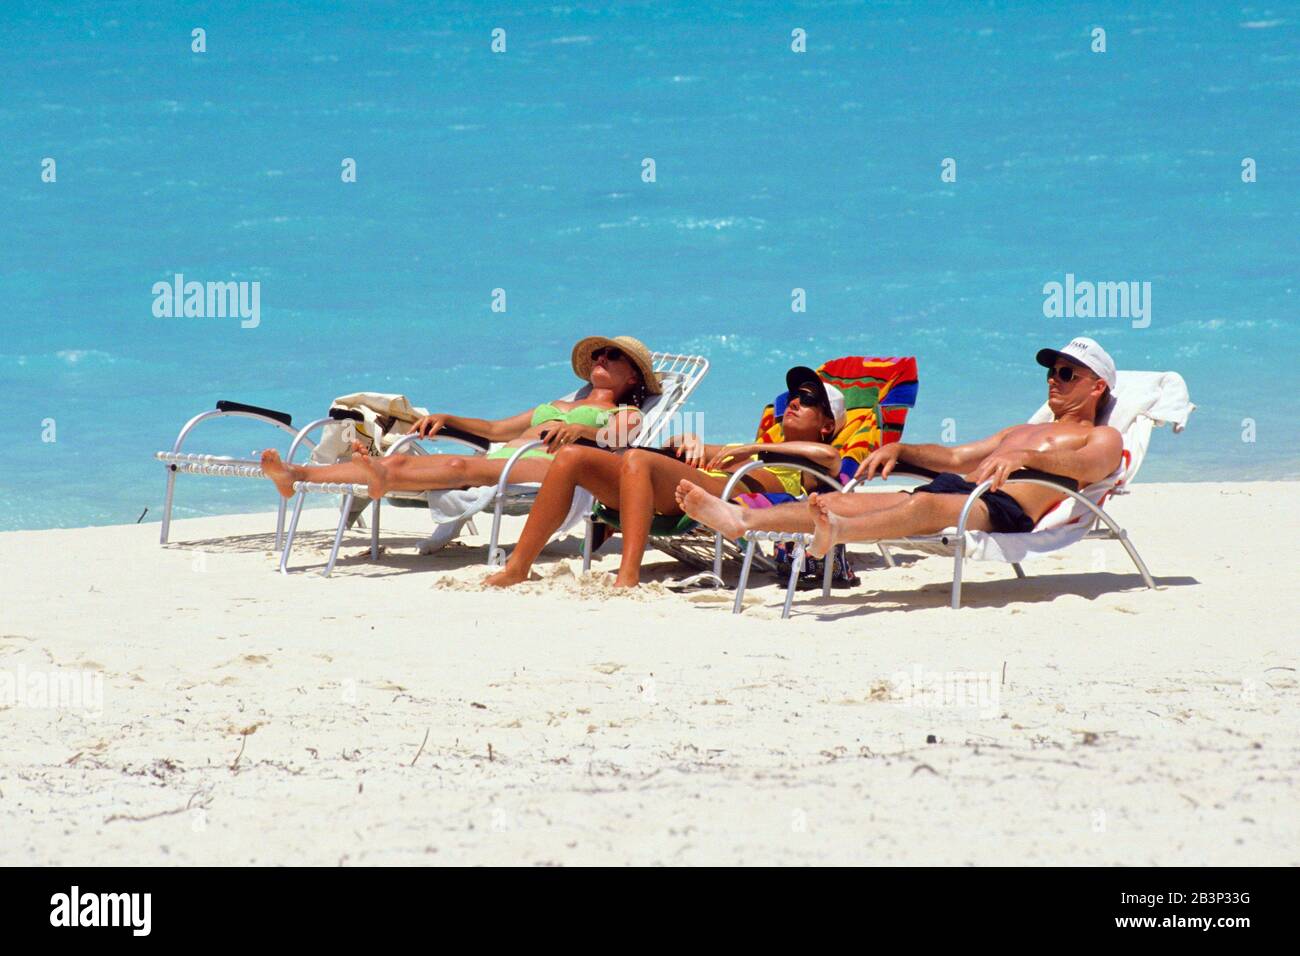 Karibik - Urlauber auf den Bahamas liegen am Strand - Liegestuhl, MR: Yes Stock Photo